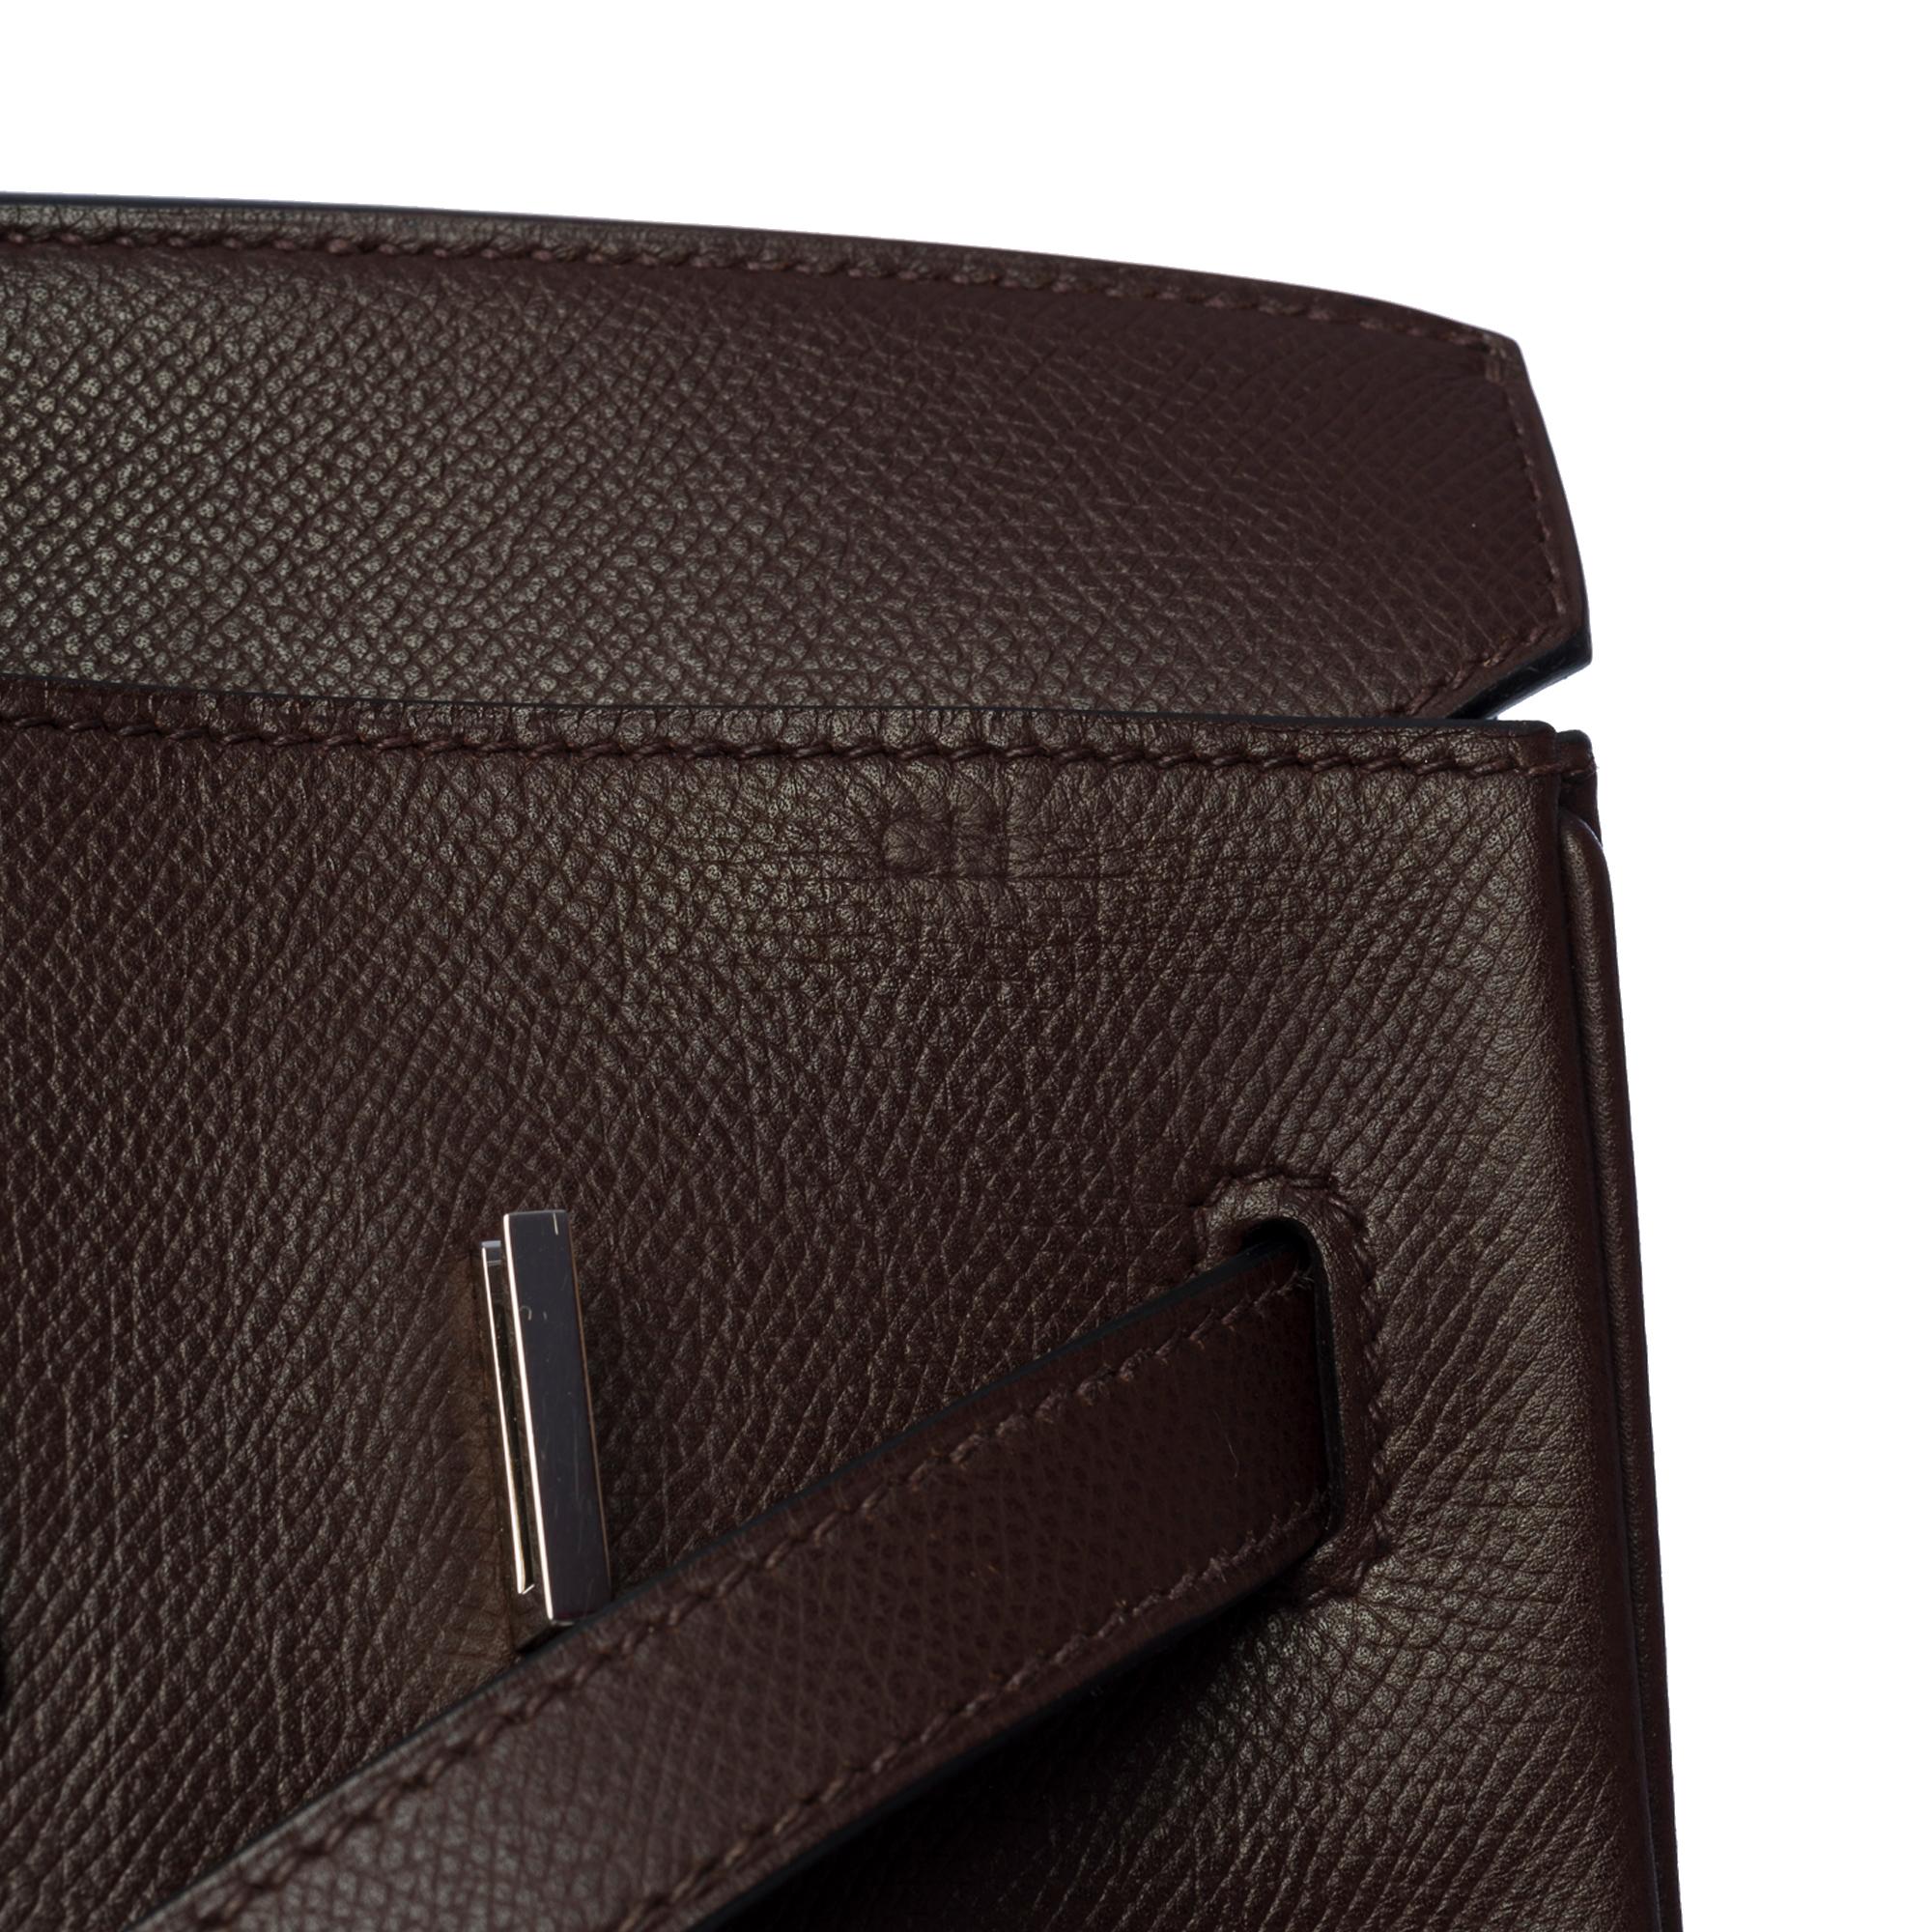 Stunning Hermès Birkin 35 handbag in Brown Epsom leather, SHW In Good Condition In Paris, IDF